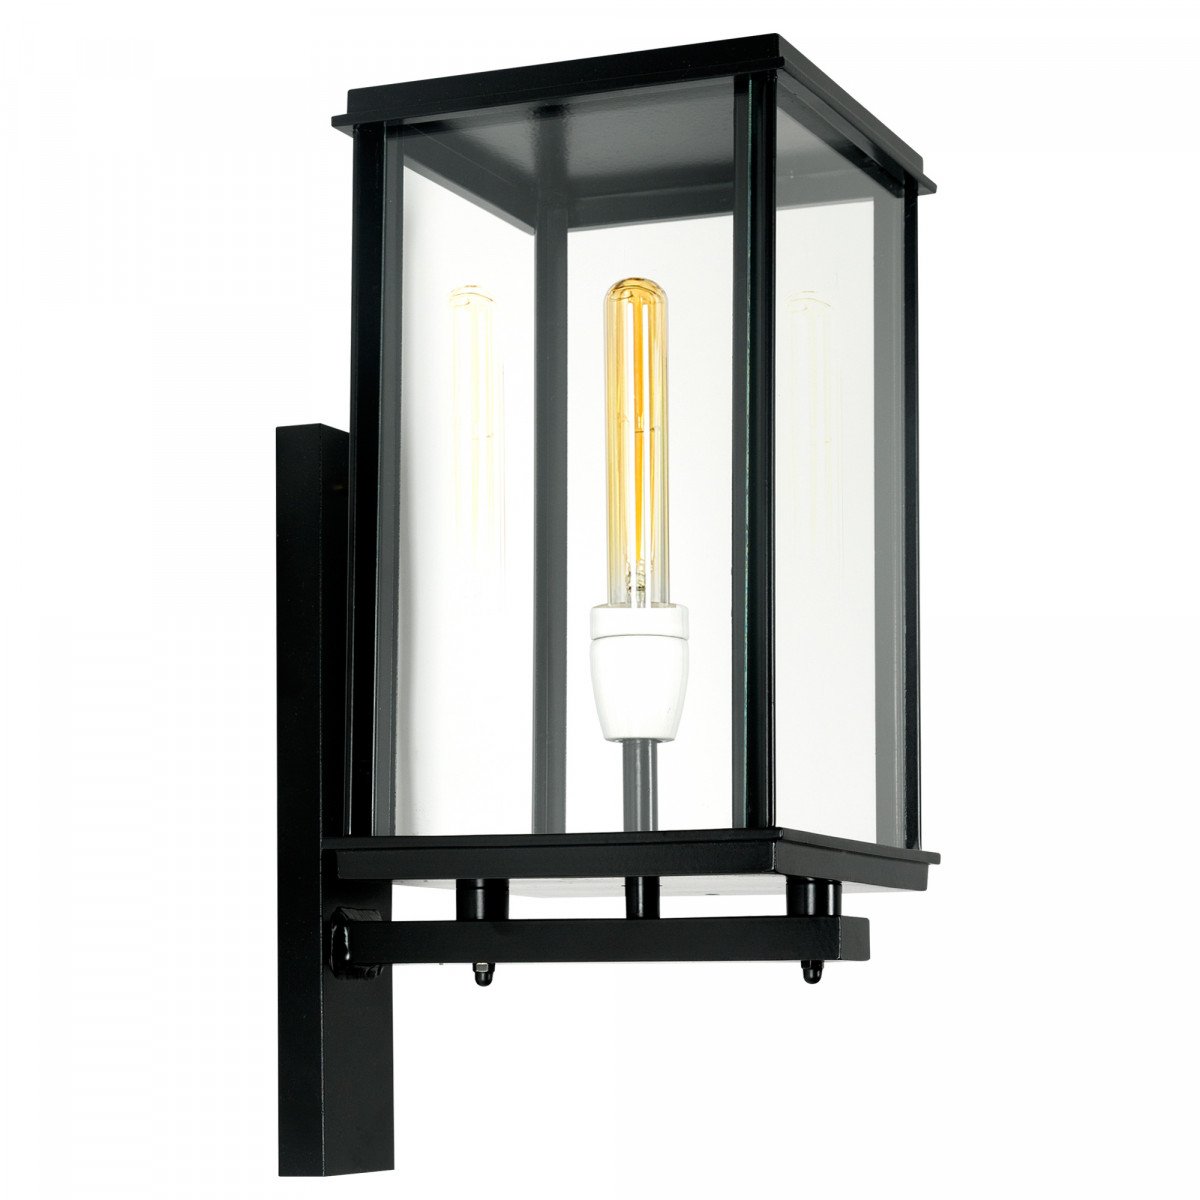 Stylish vitrine outdoor wall light from KS outdoor lighting company